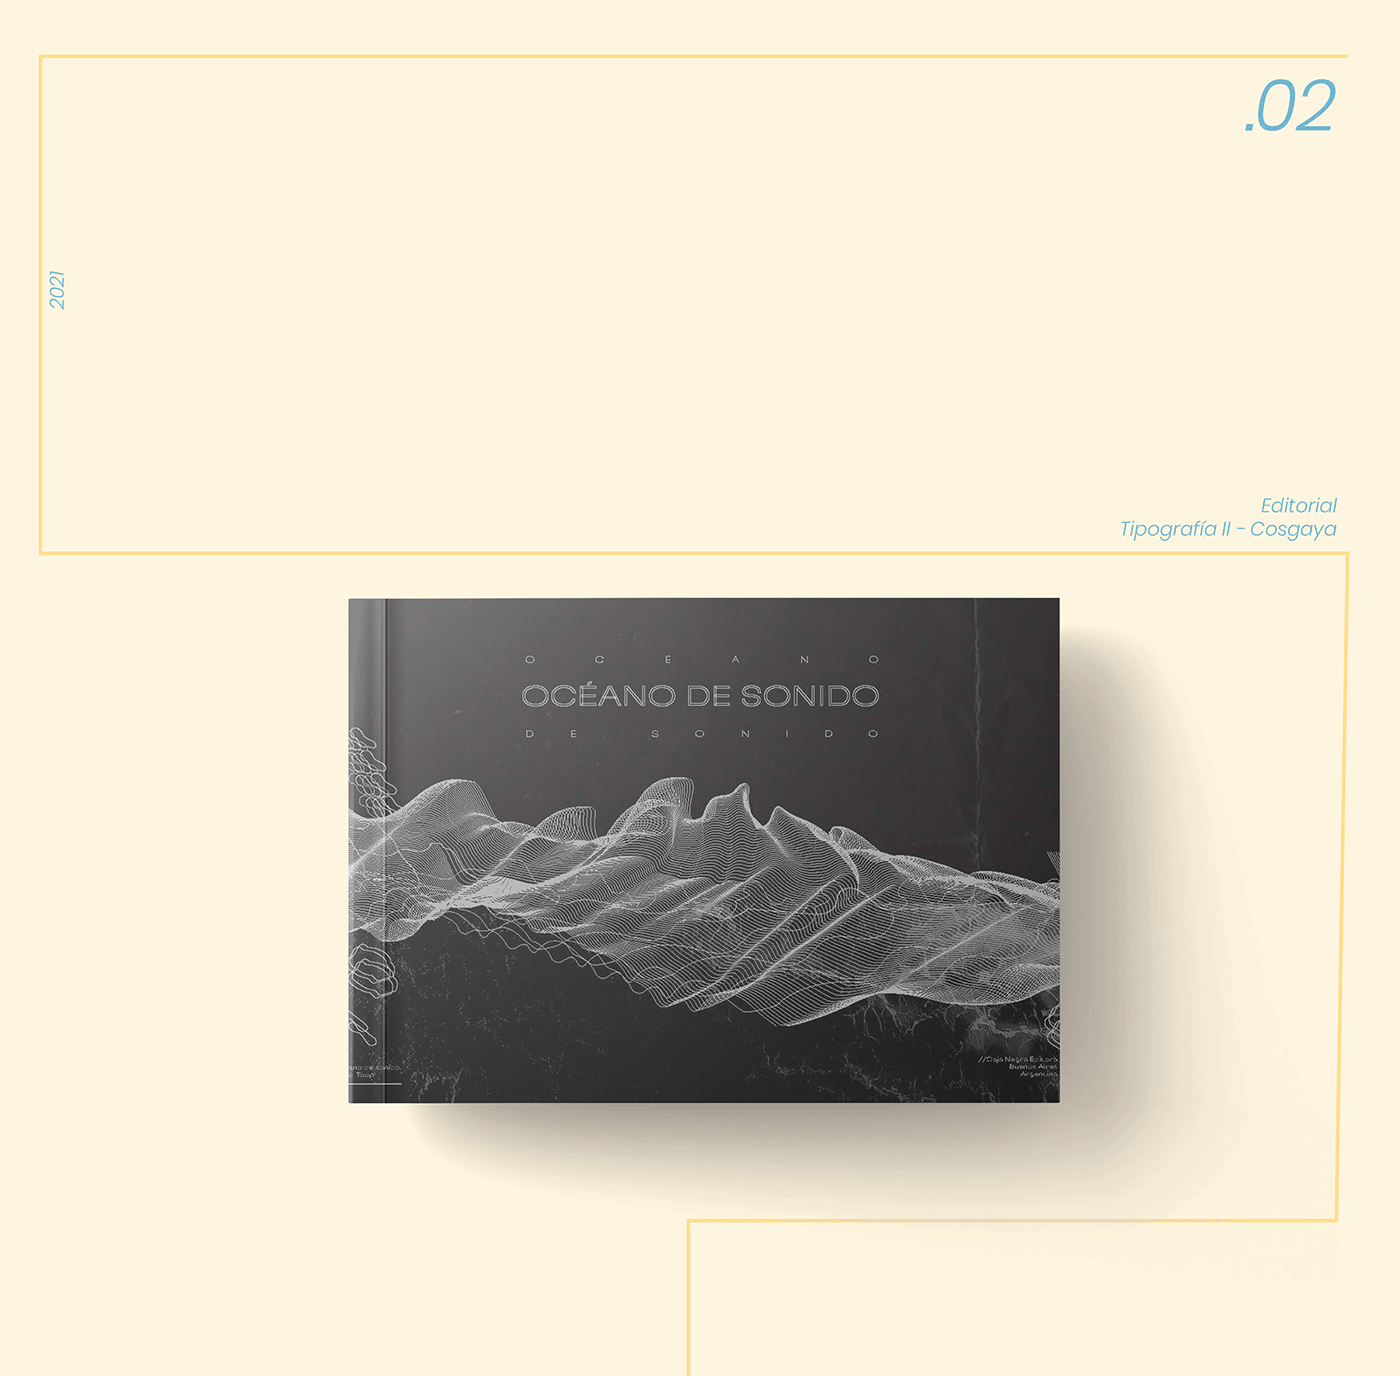 book cosgaya editorial graphic design  libro music Ocean sound tipografia typography  